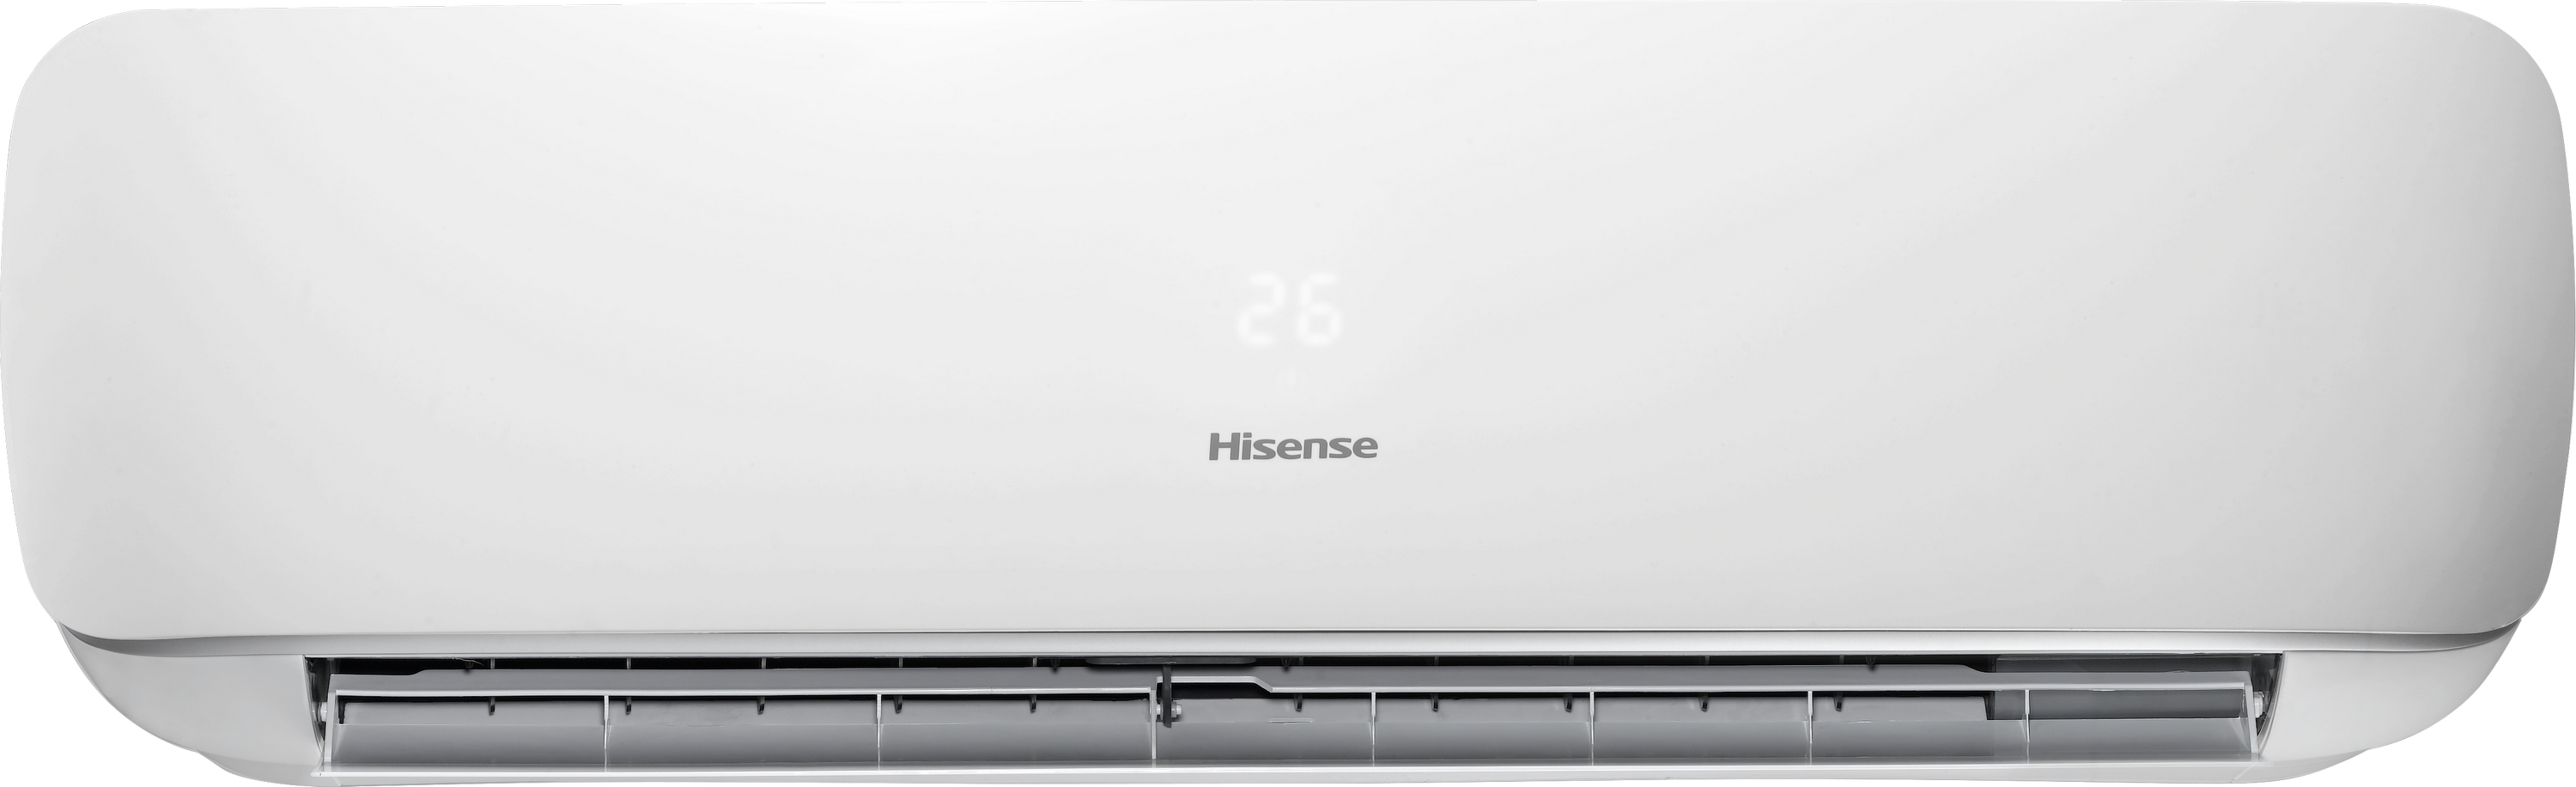 в продаже Внутренний блок мультисплит-системы Hisense Apple Pie AST-09UW4SVETG10G - фото 3